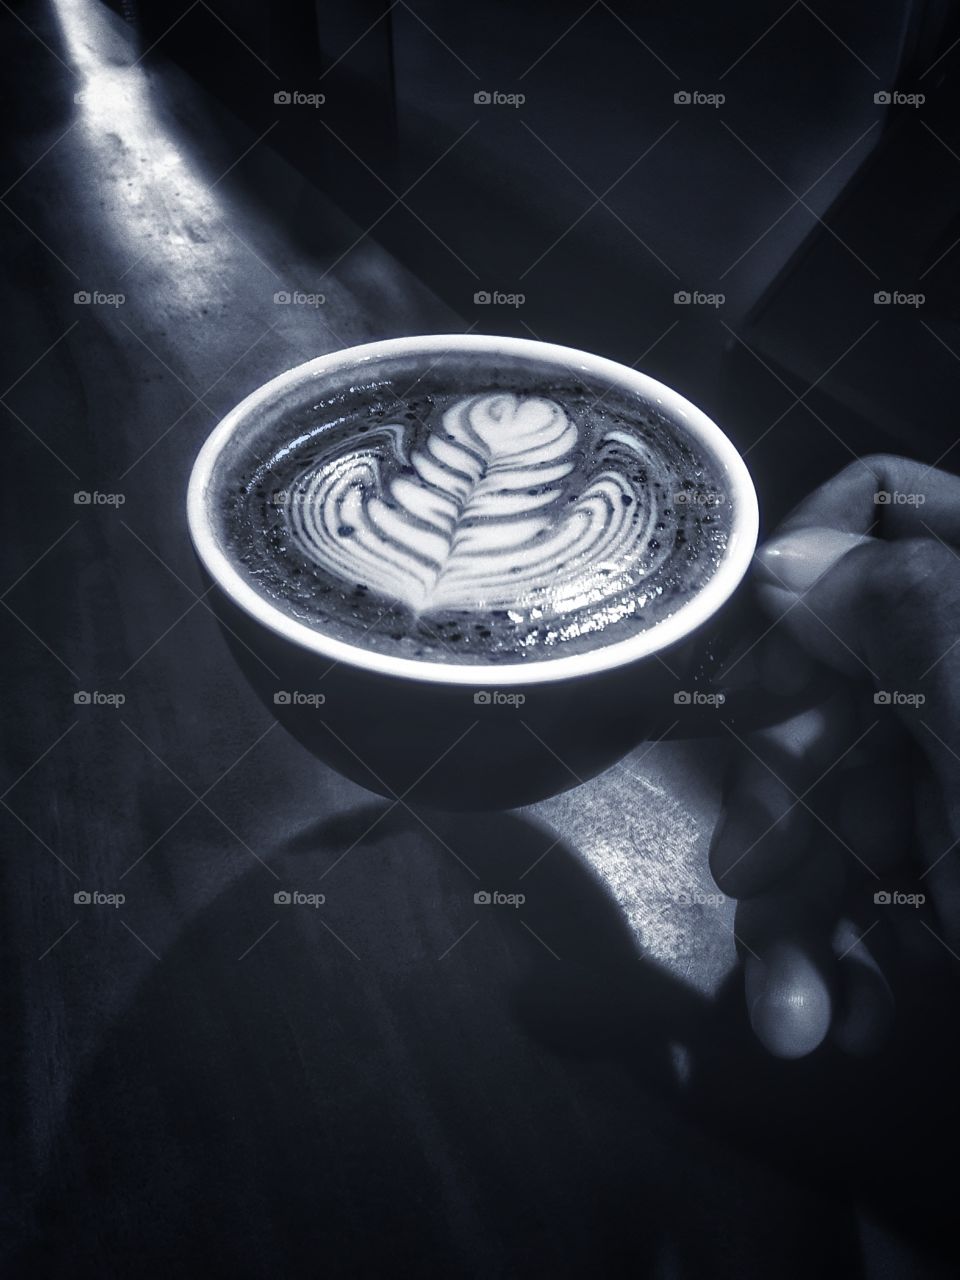 Enjoy The Coffee With Monochrome Way